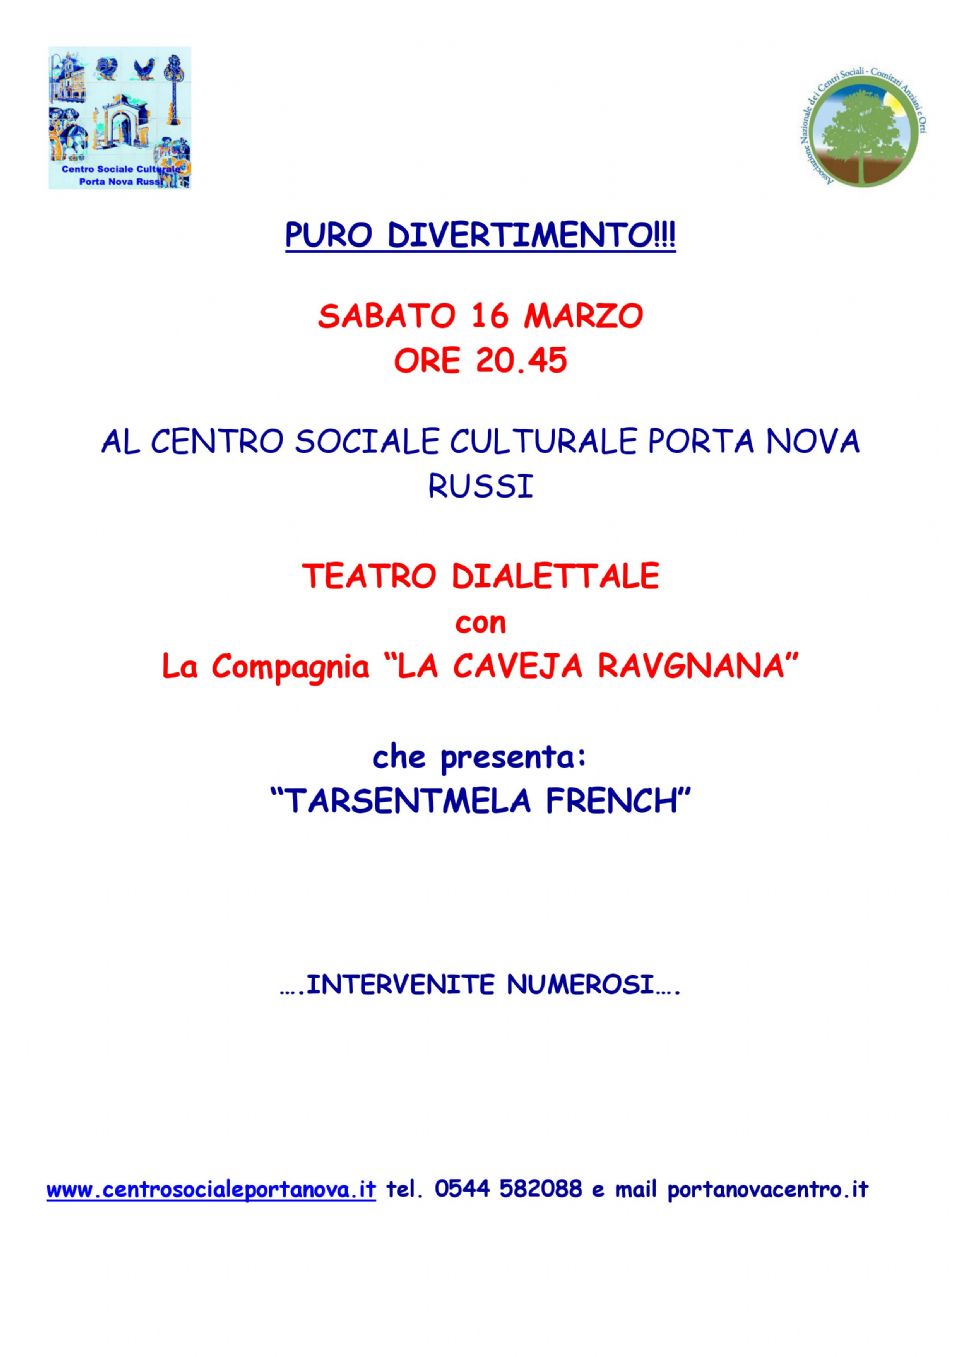 Commedia Dialettale - Tarsentmela French (RINVIATA AL 4 MAGGIO 2019)